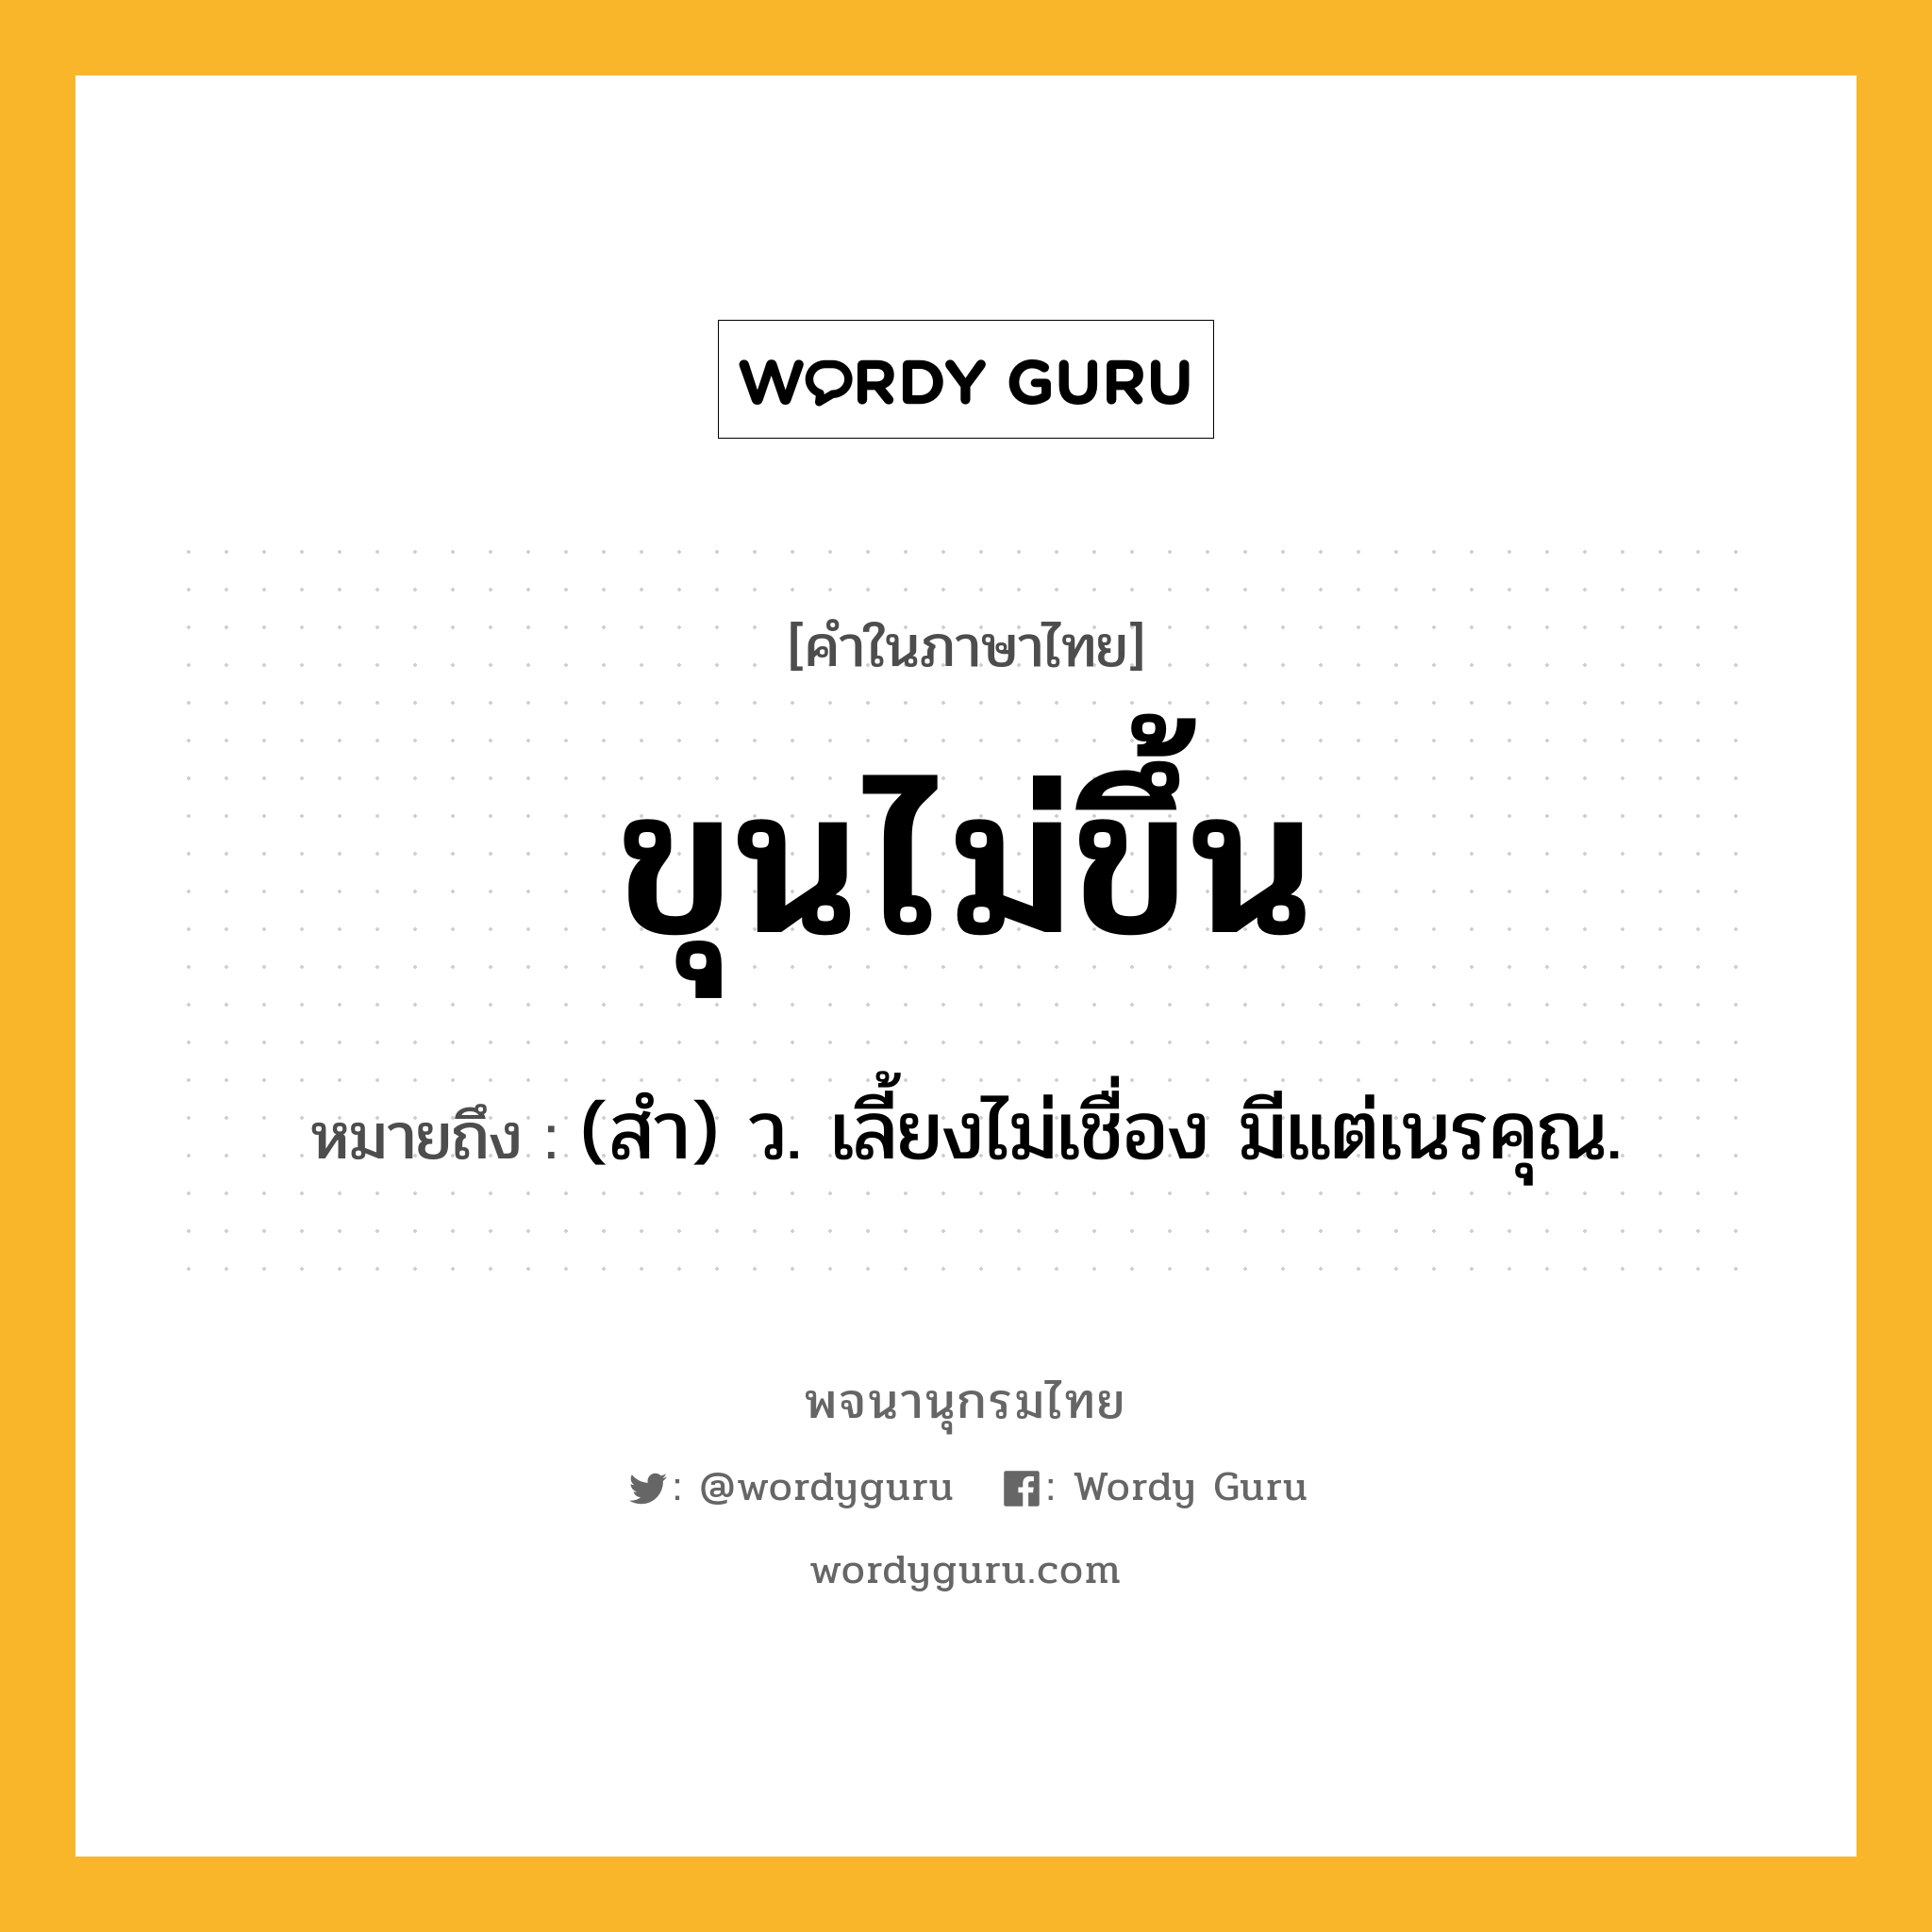 ขุนไม่ขึ้น หมายถึงอะไร?, คำในภาษาไทย ขุนไม่ขึ้น หมายถึง (สํา) ว. เลี้ยงไม่เชื่อง มีแต่เนรคุณ.